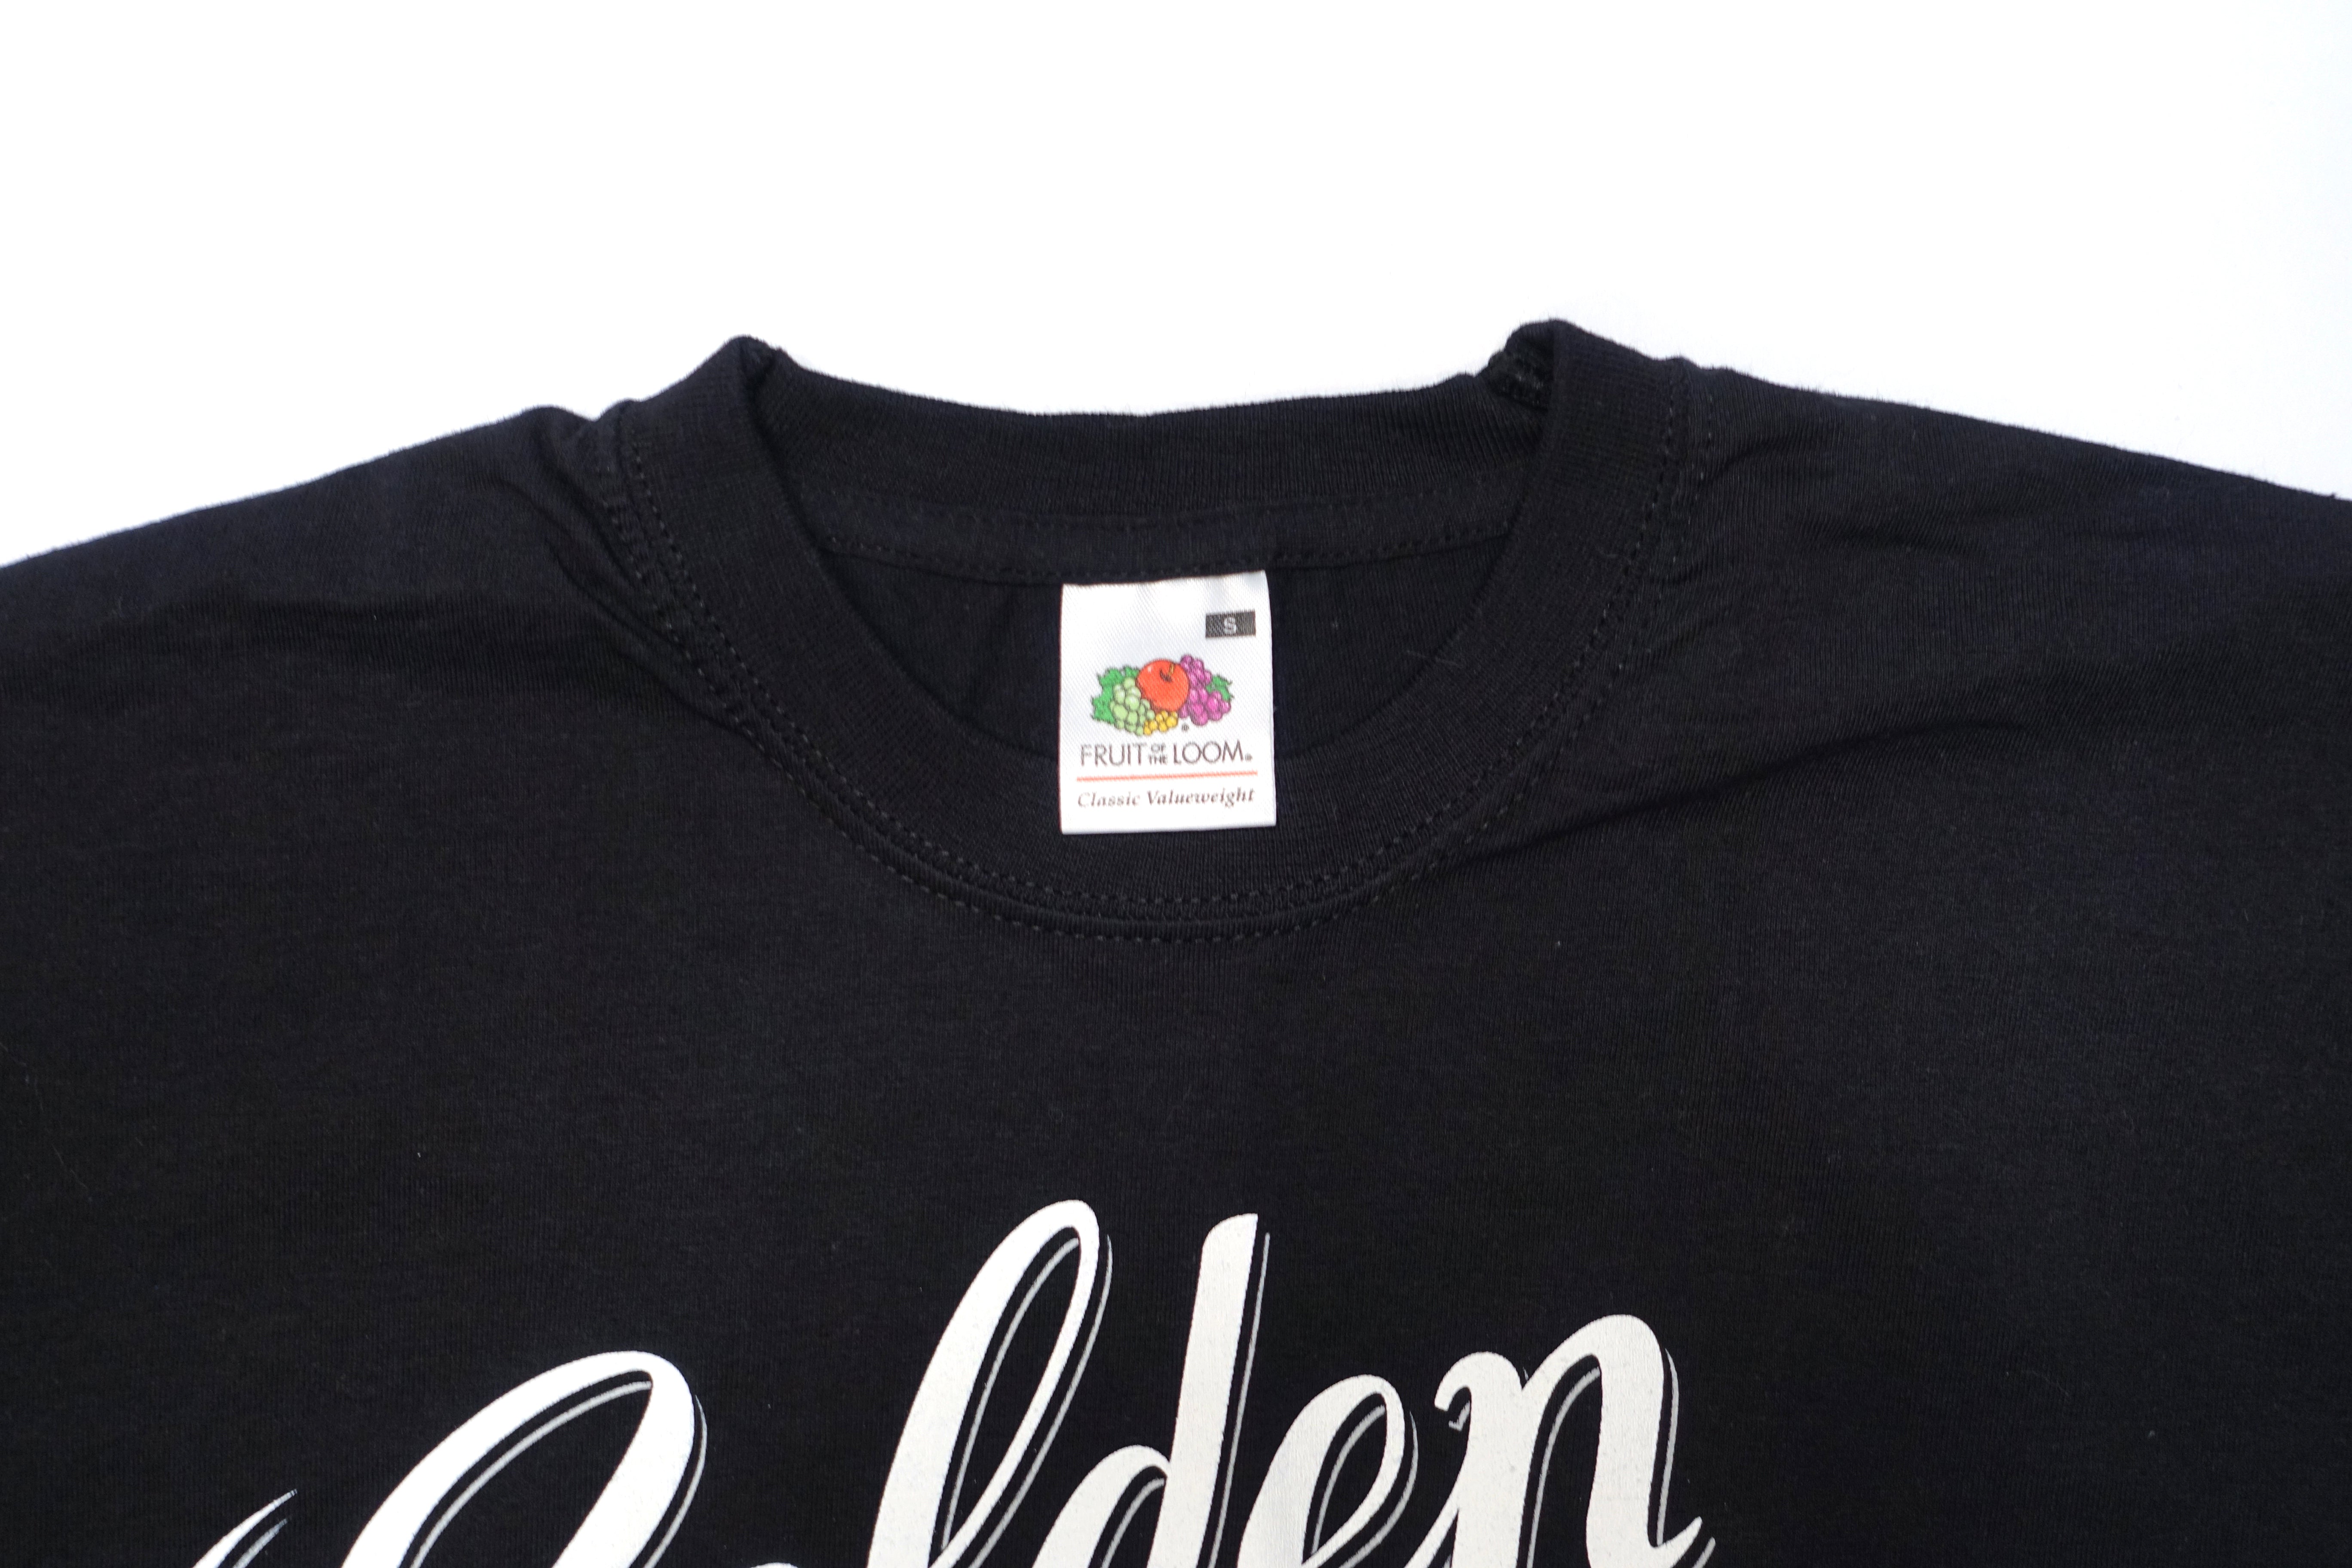 Golden Earring – Script Logo Tour Shirt Size Small